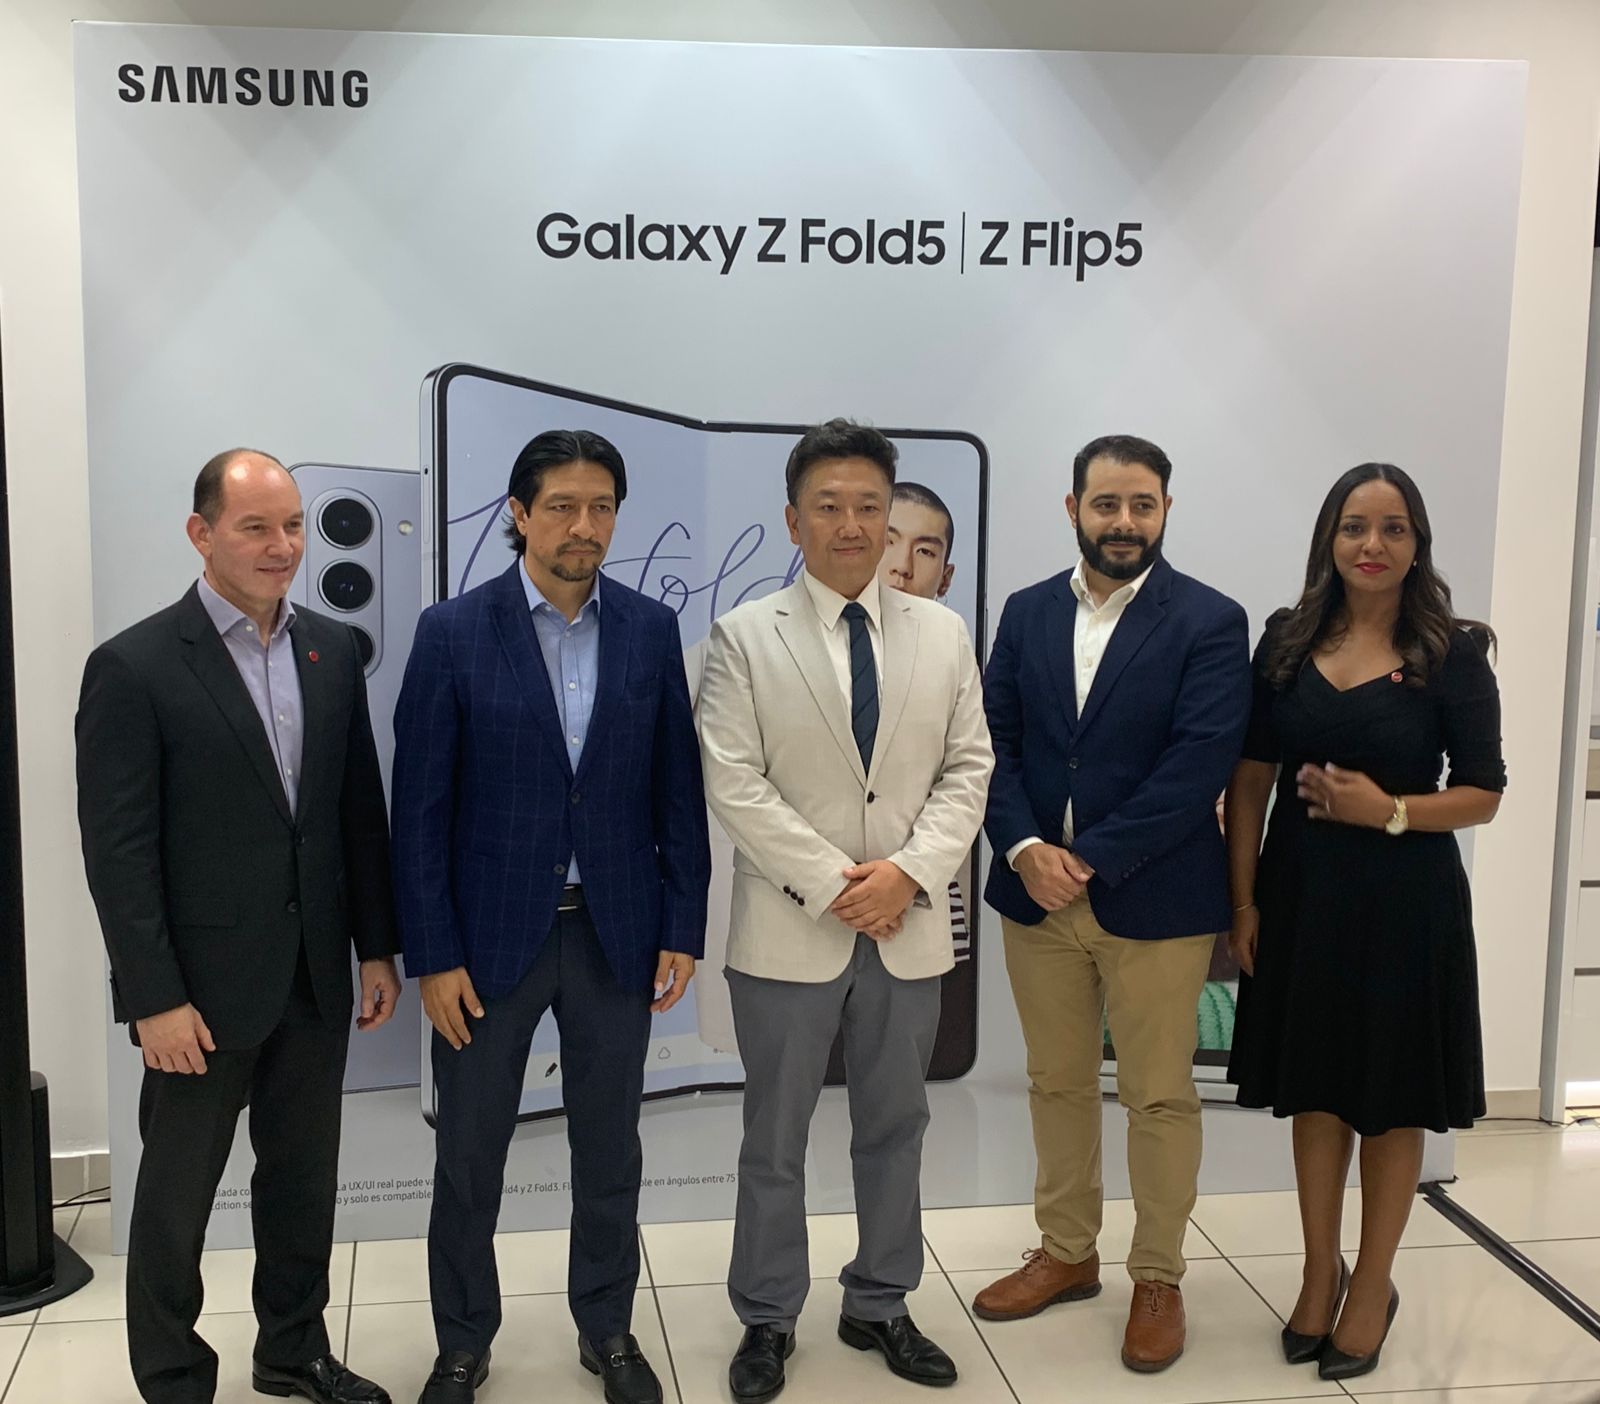 Claro y Samsung presentan nuevos Galaxy Z Flip5 y Galaxy Z Fold5